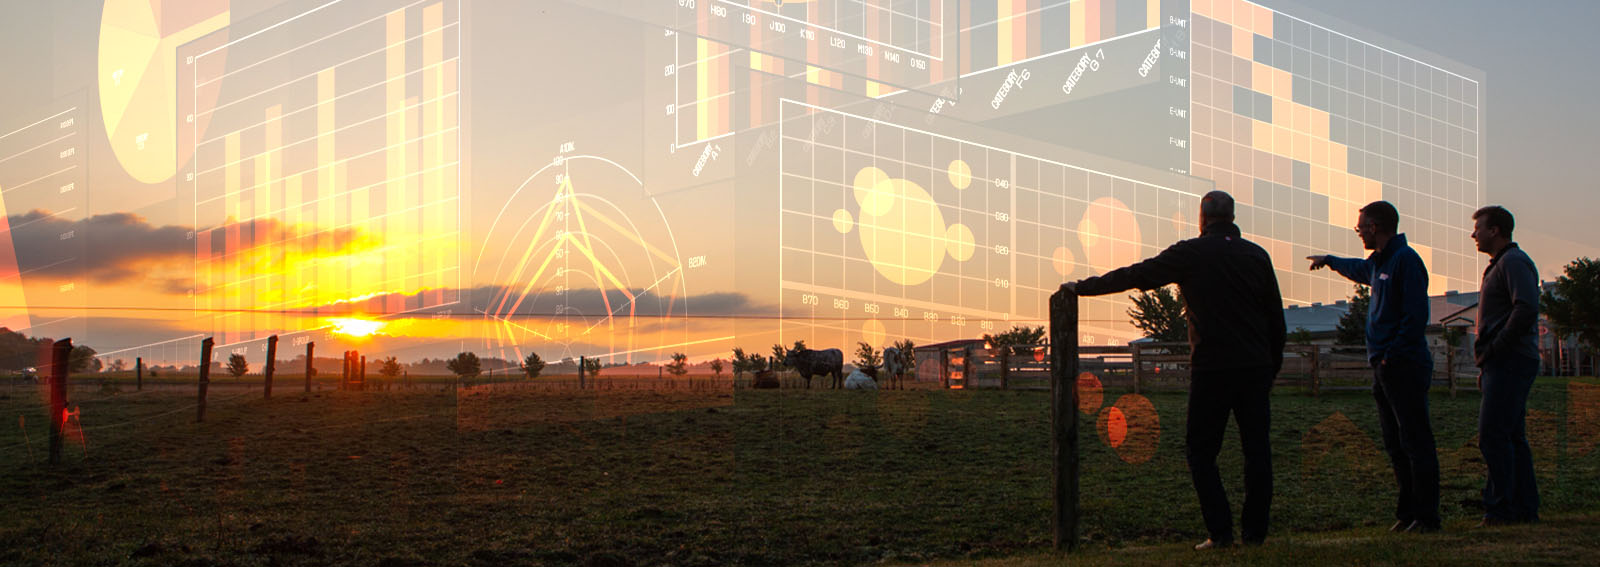 Trois agriculteurs regardant dans un champ agricole avec des superpositions de graphiques au-dessus de l'image.